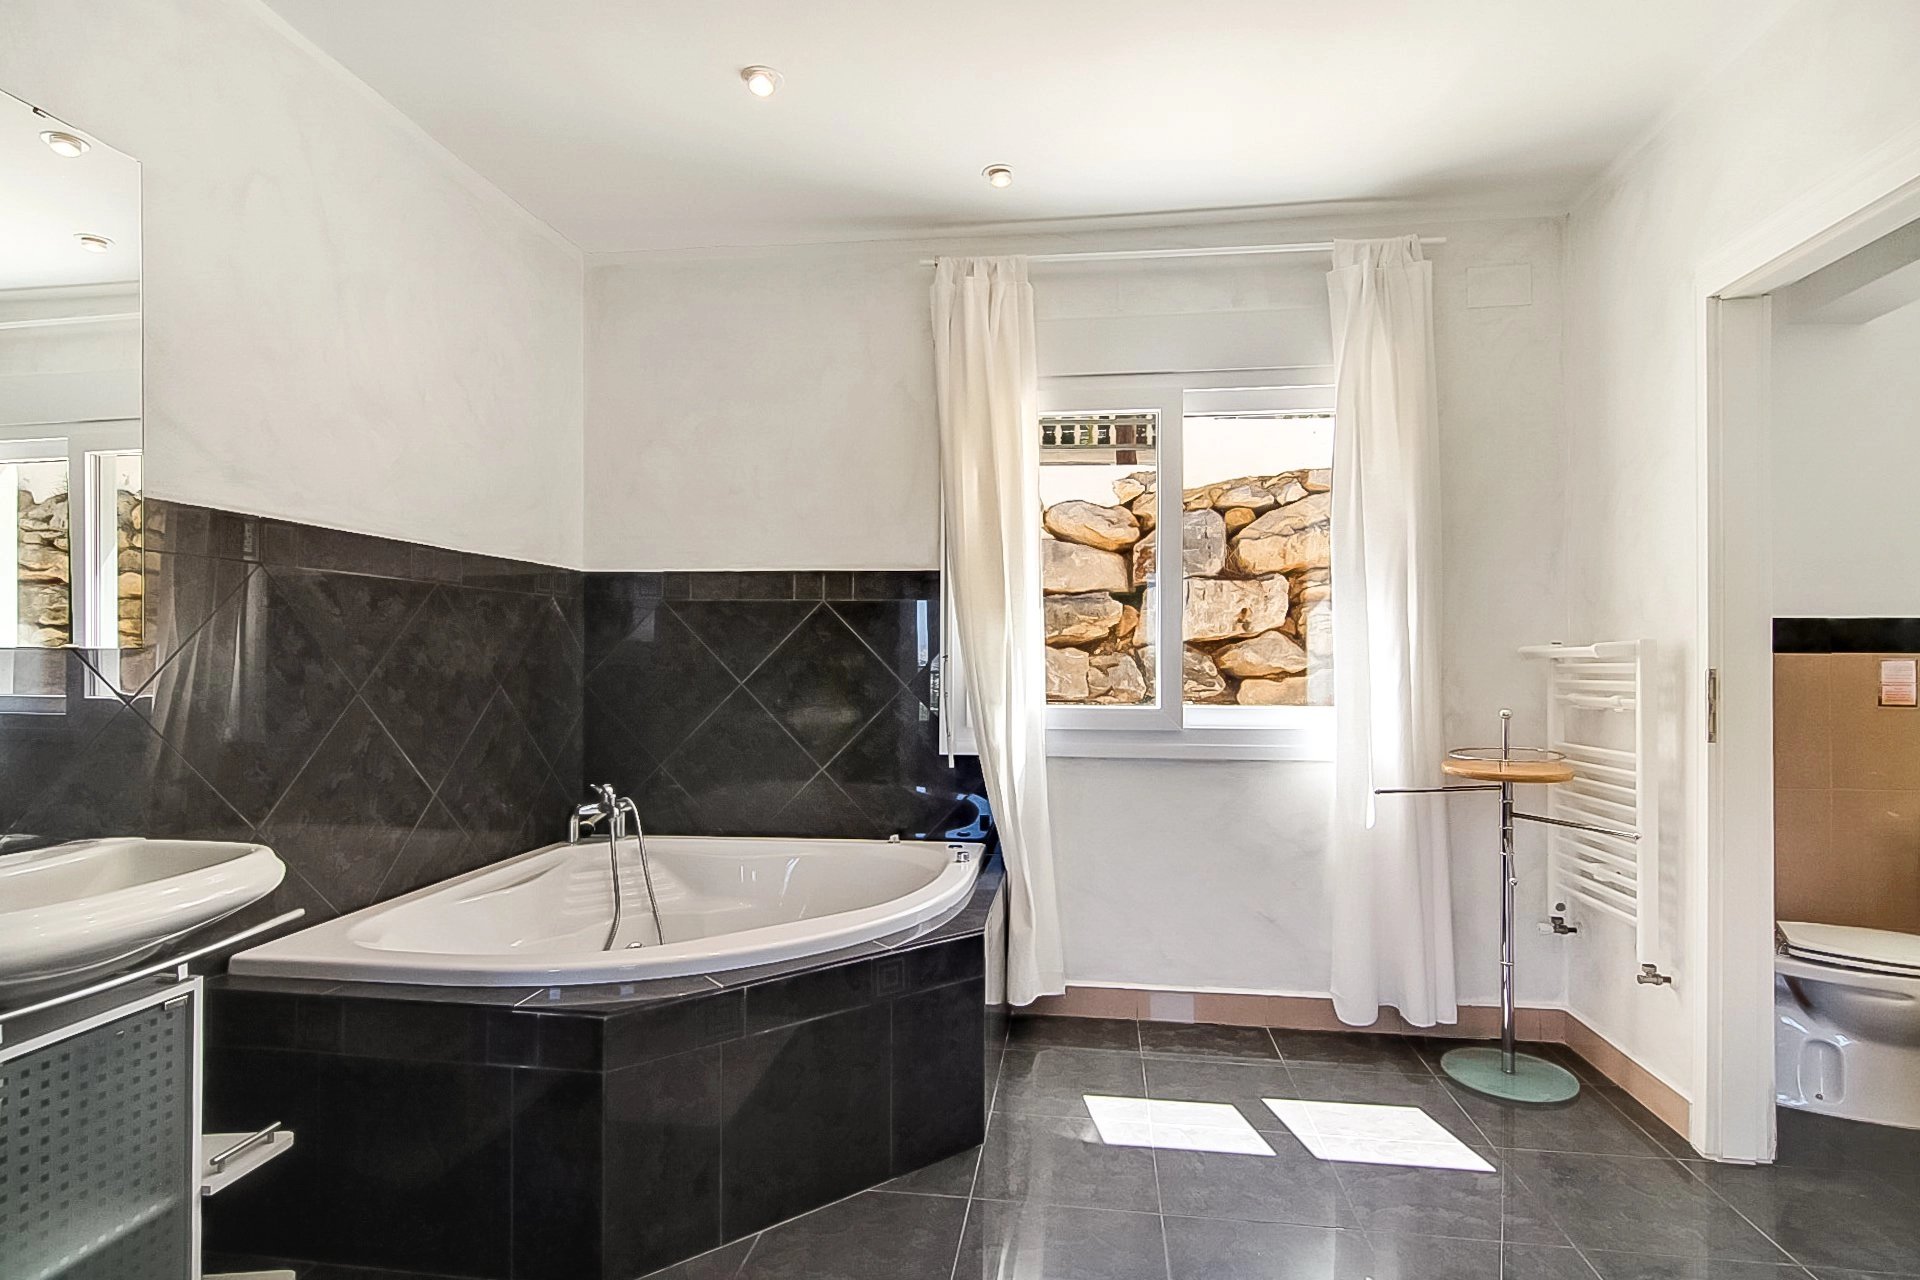 3bed / bath villa sur 1 étage avec des vues spectaculaires